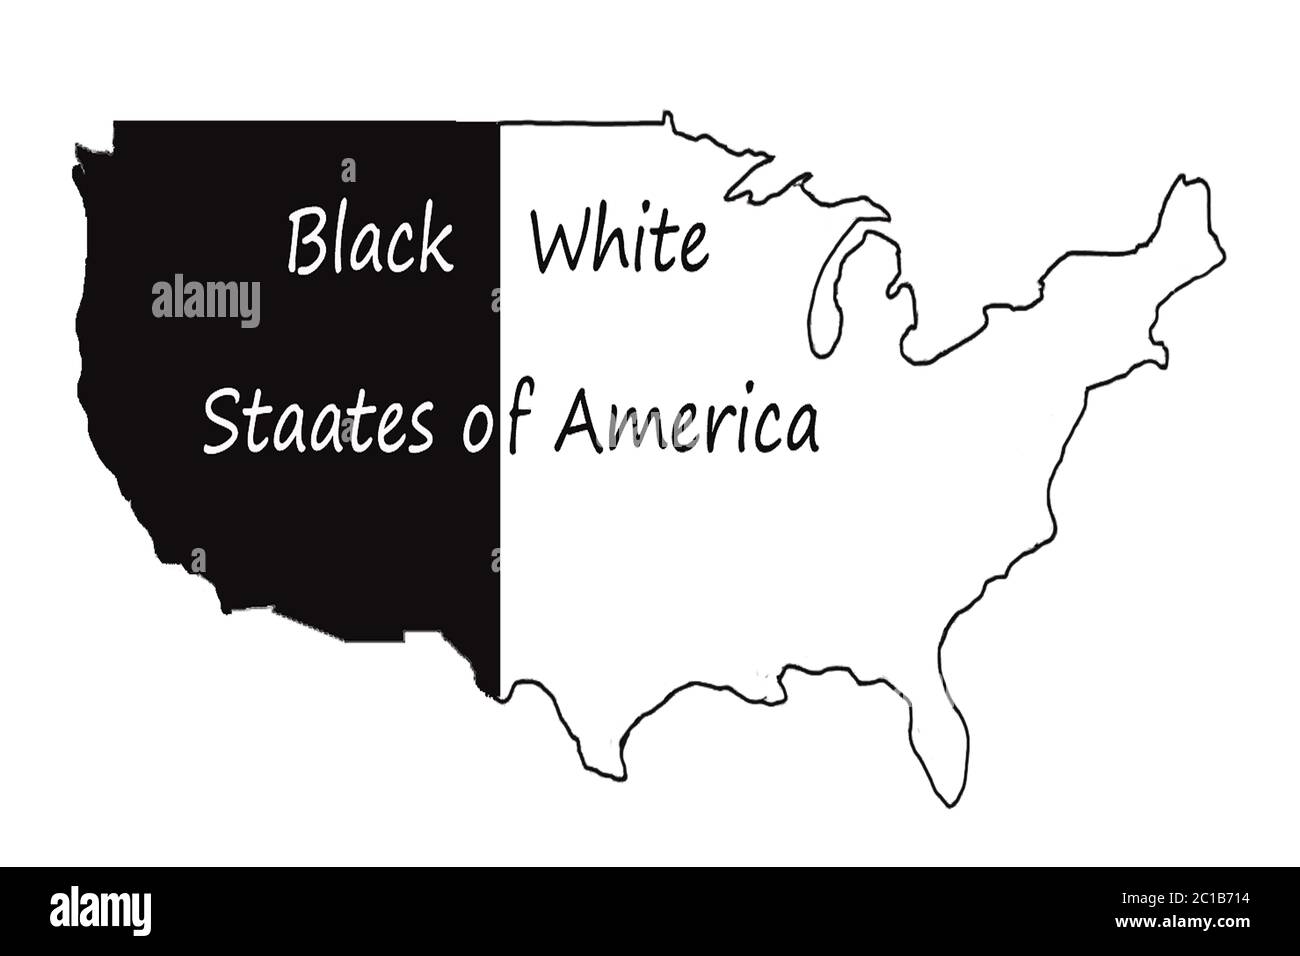 Arrêtez le racisme. Les vies noires comptent. Bannière de protestation sur les droits humains des Noirs en Amérique des États-Unis. Carte Amérique noir blanc Banque D'Images